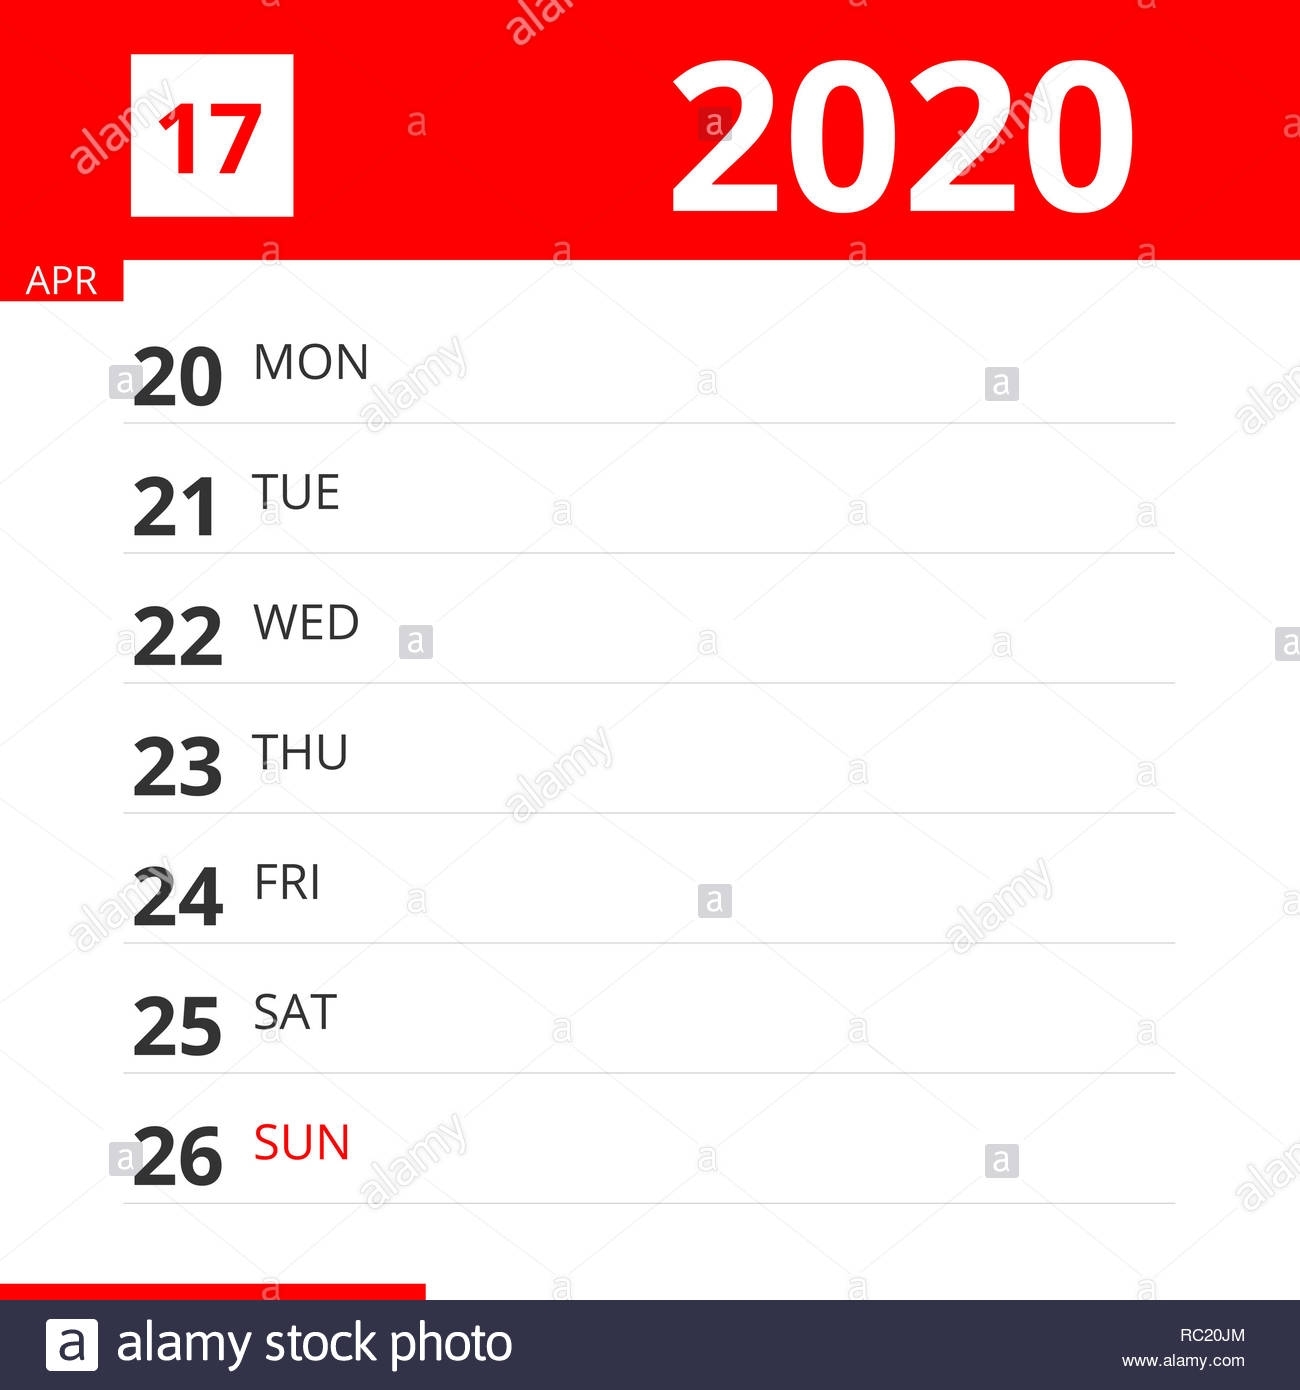 Calendar Planner For Week 17 In 2020, Ends April 26, 2020